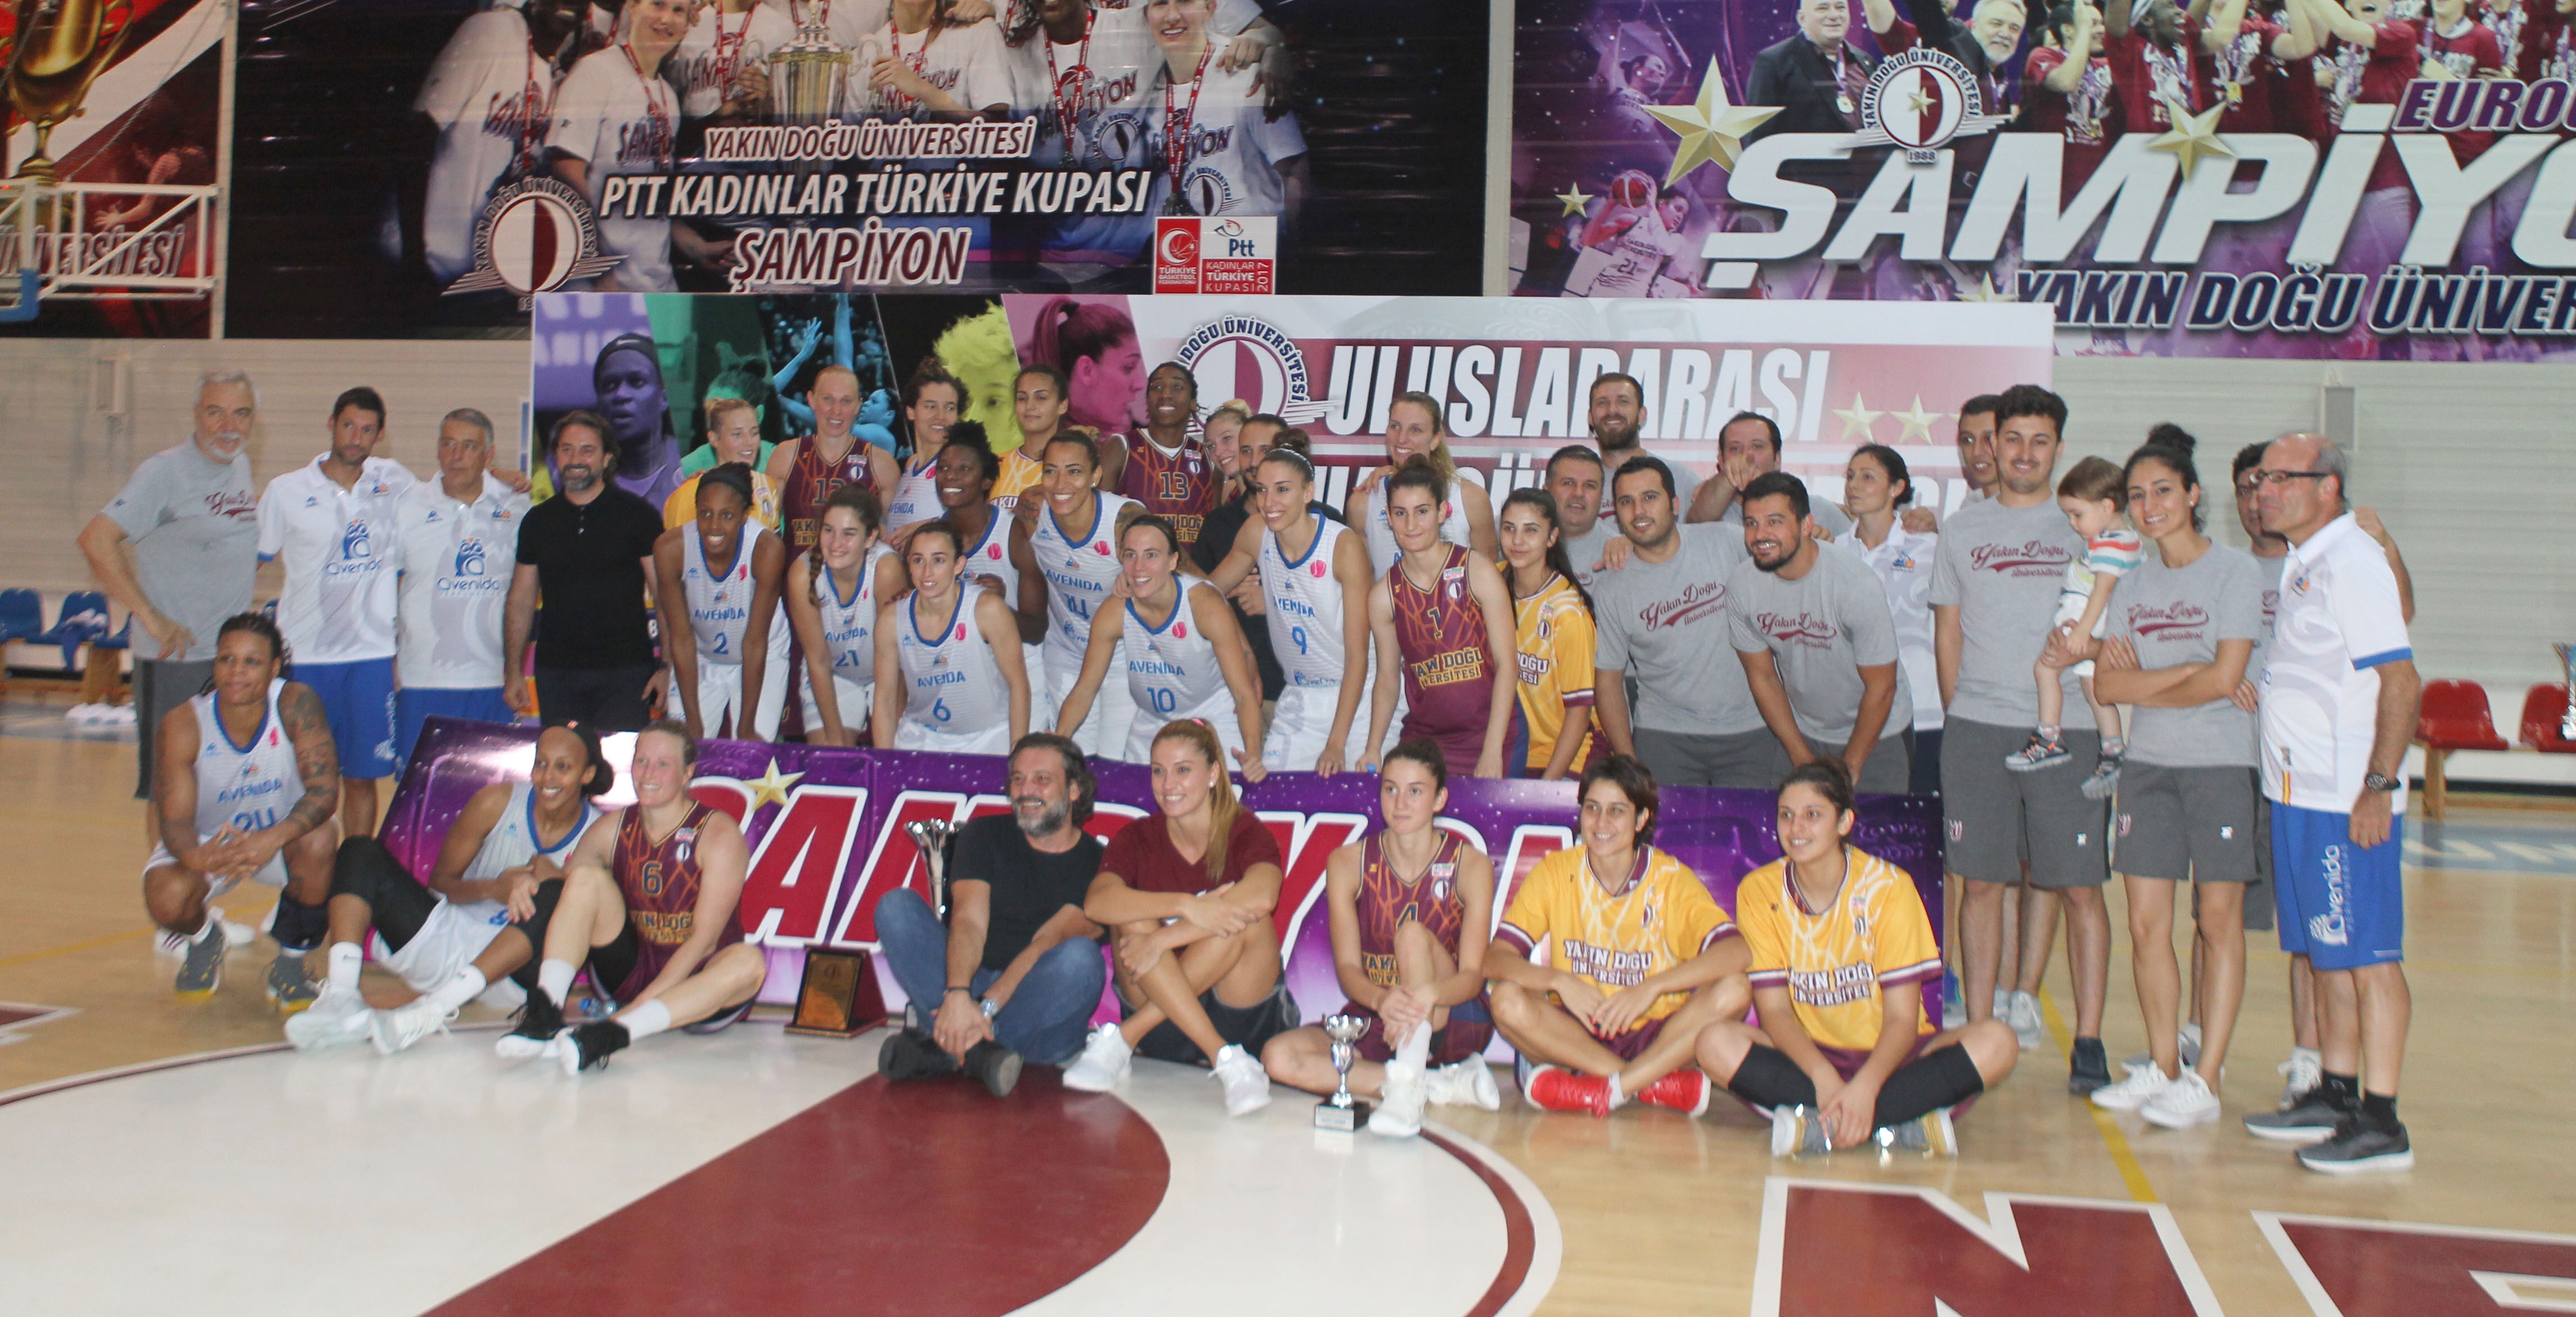 Uluslararası Dr. Suat Günsel Basketbol Kupası’nın Ardından; “Maçlar Kuzey Kıbrıs Türk Cumhuriyeti’nde Oynansın”